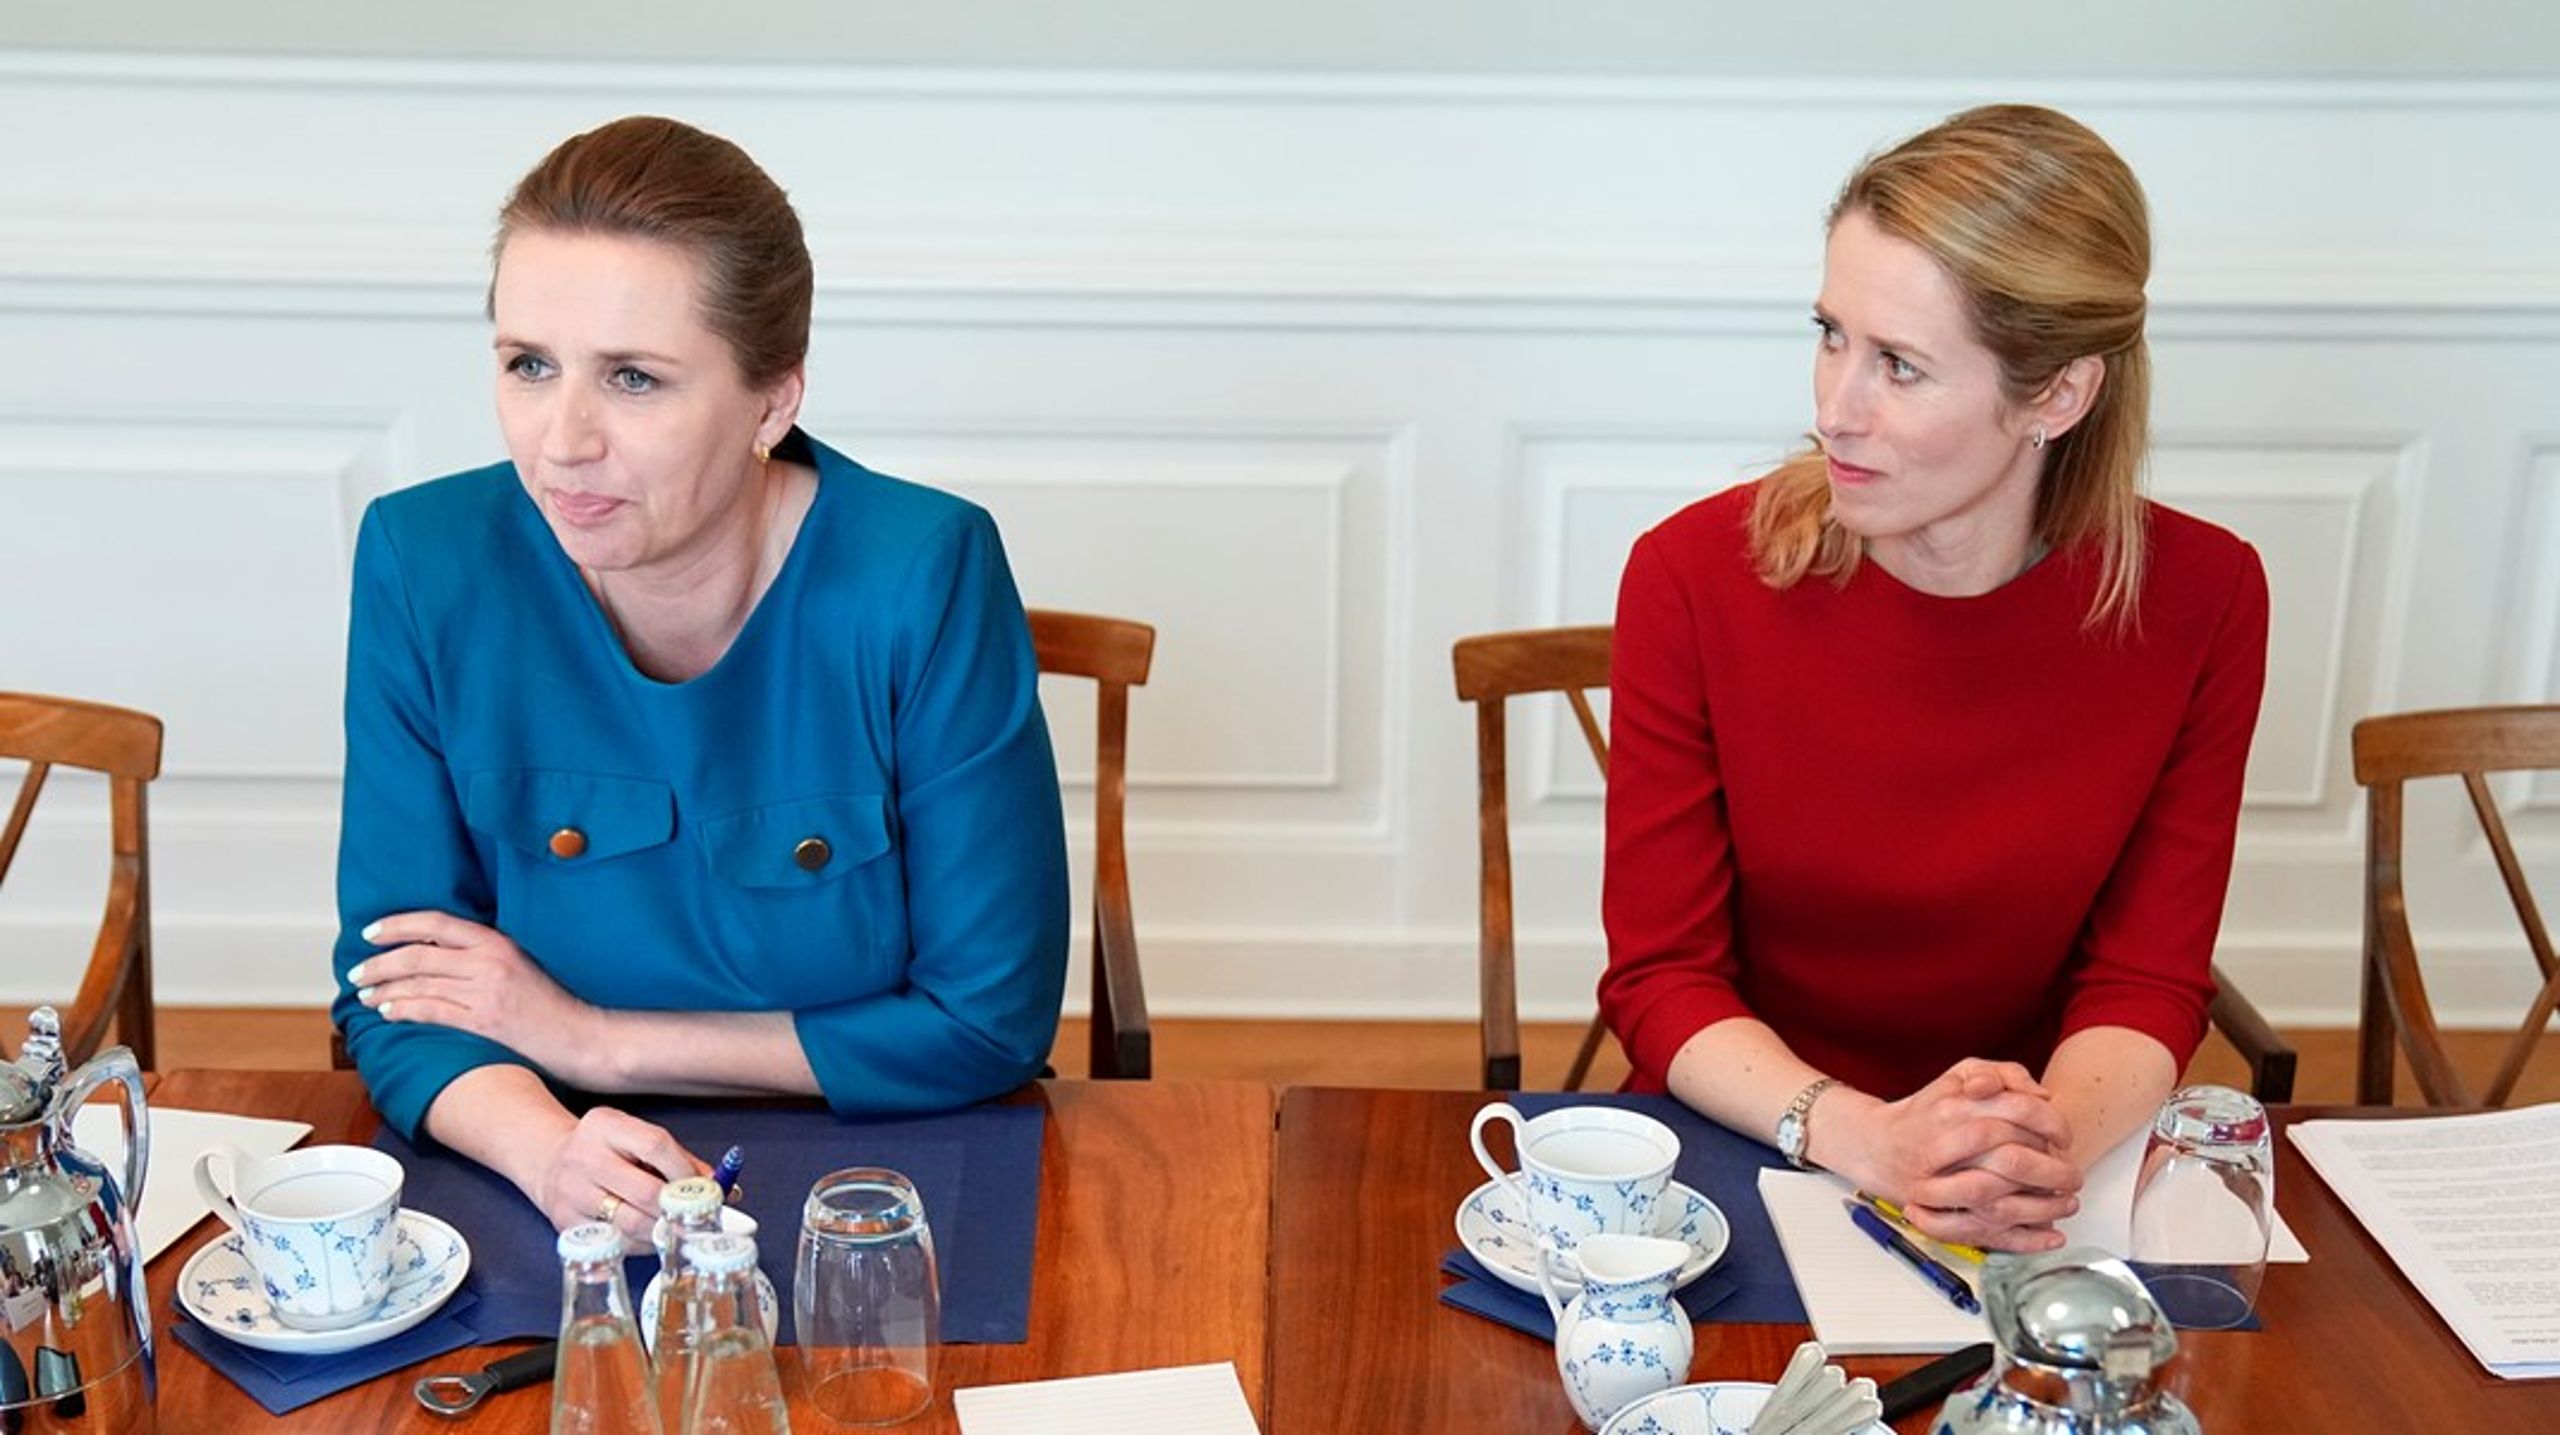 Danmarks statsminister Mette Frederiksen och Estlands premiärminister Kaja Kallas vid ett möte i maj i år.